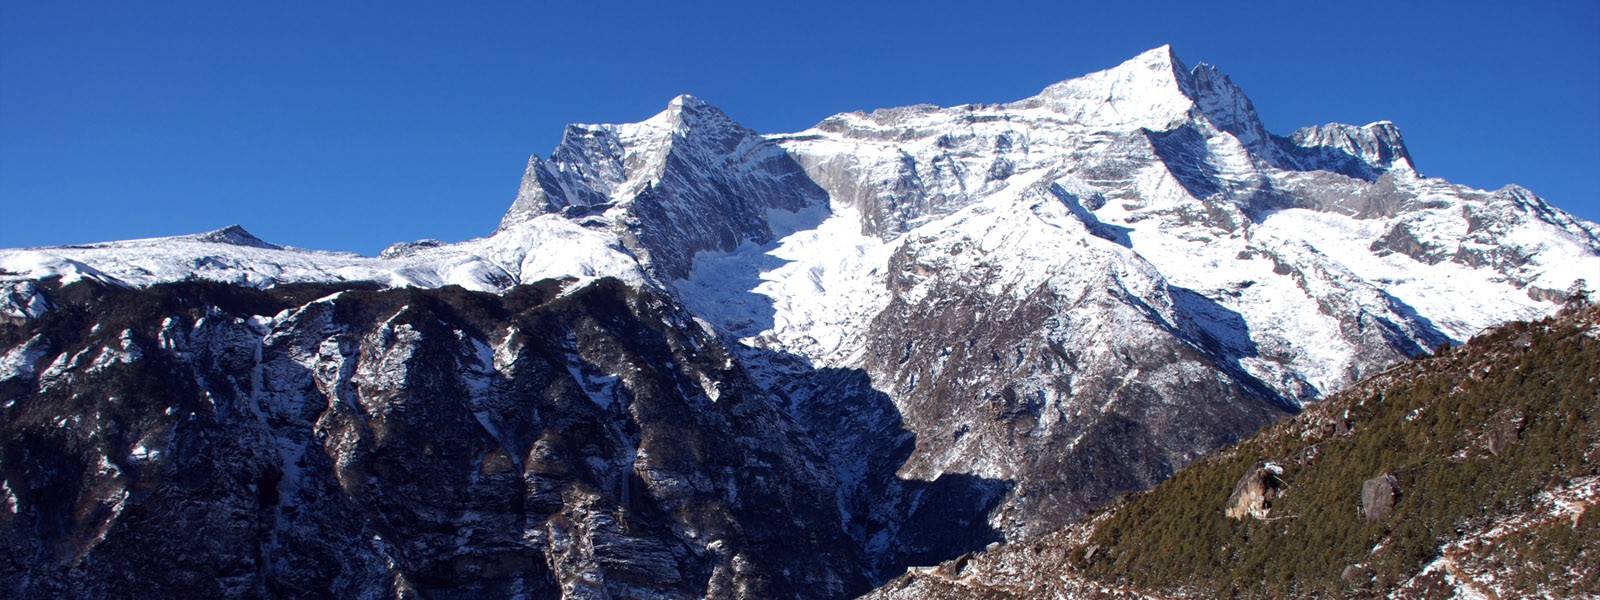 Kwangde Peak Expedition